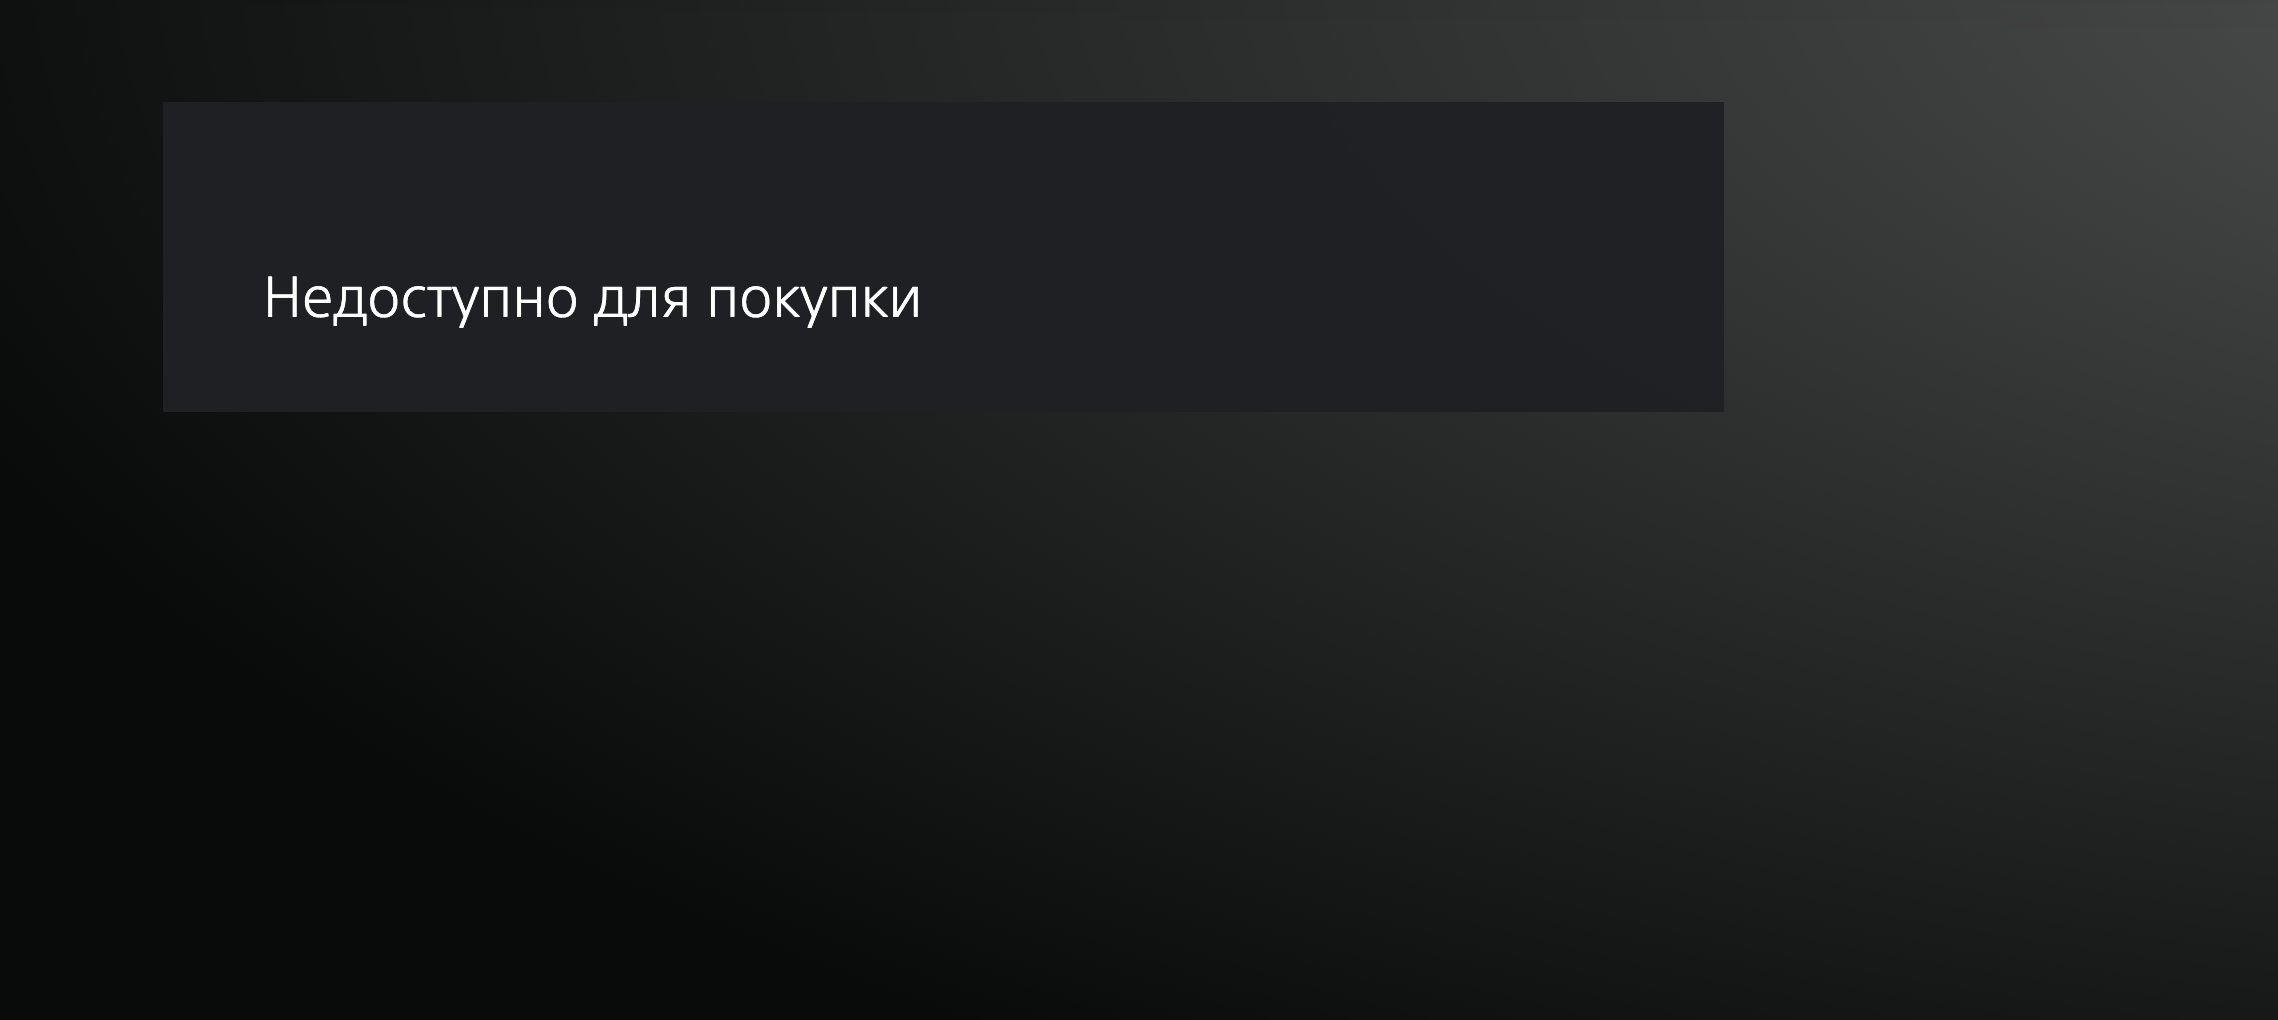 «Недоступно для покупки» - Gran Turismo 7 нельзя купить в России